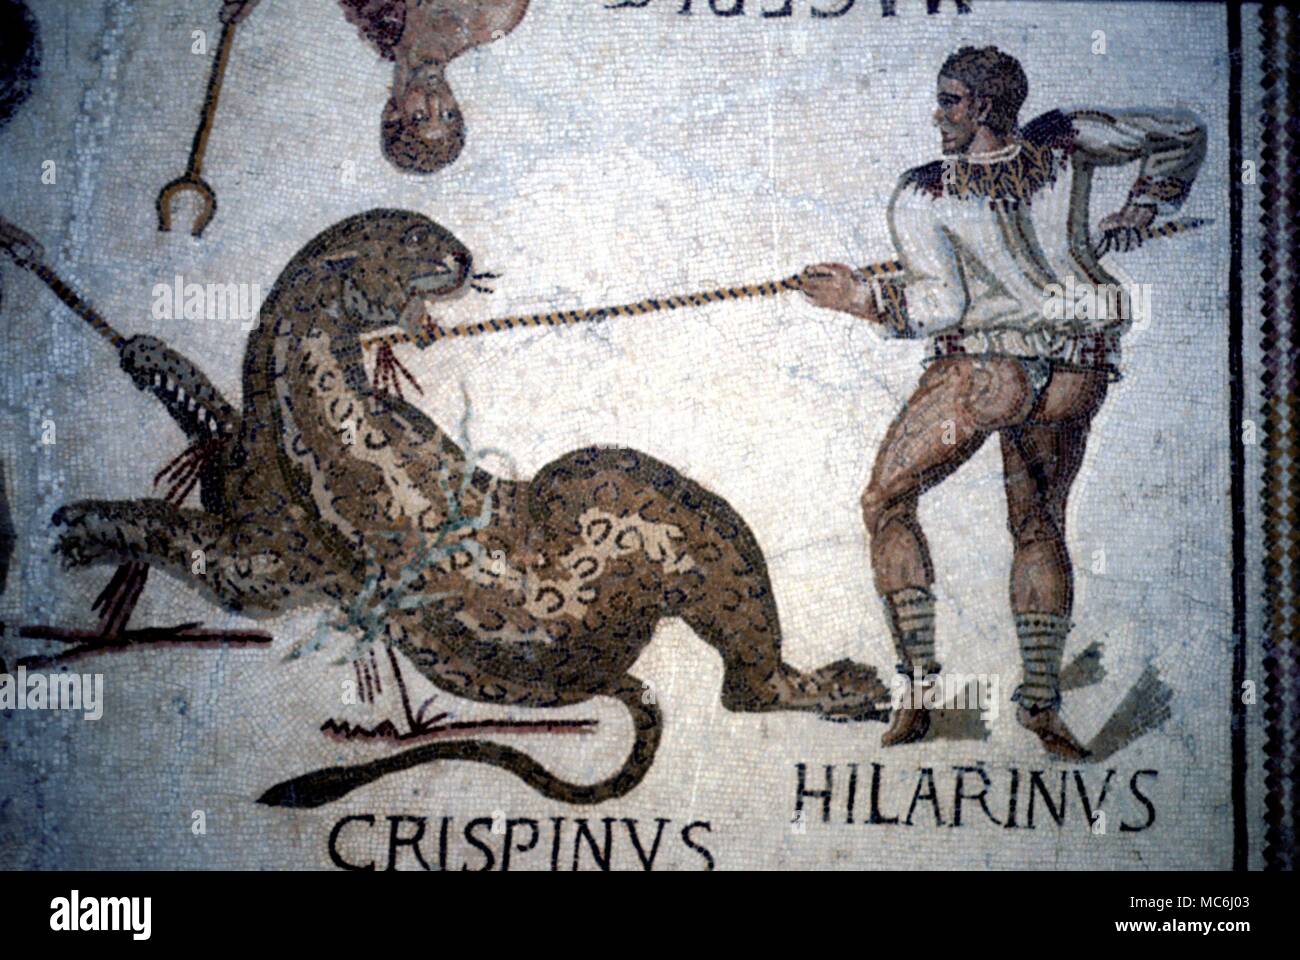 Römische Mythologie Gladiatoren Ein Gladiator namens Hilarinus Angriff auf einen Tiger mit einem pilus Detail der Gladiatoren Mosaik in Sousse Tunesien Museum Stockfoto